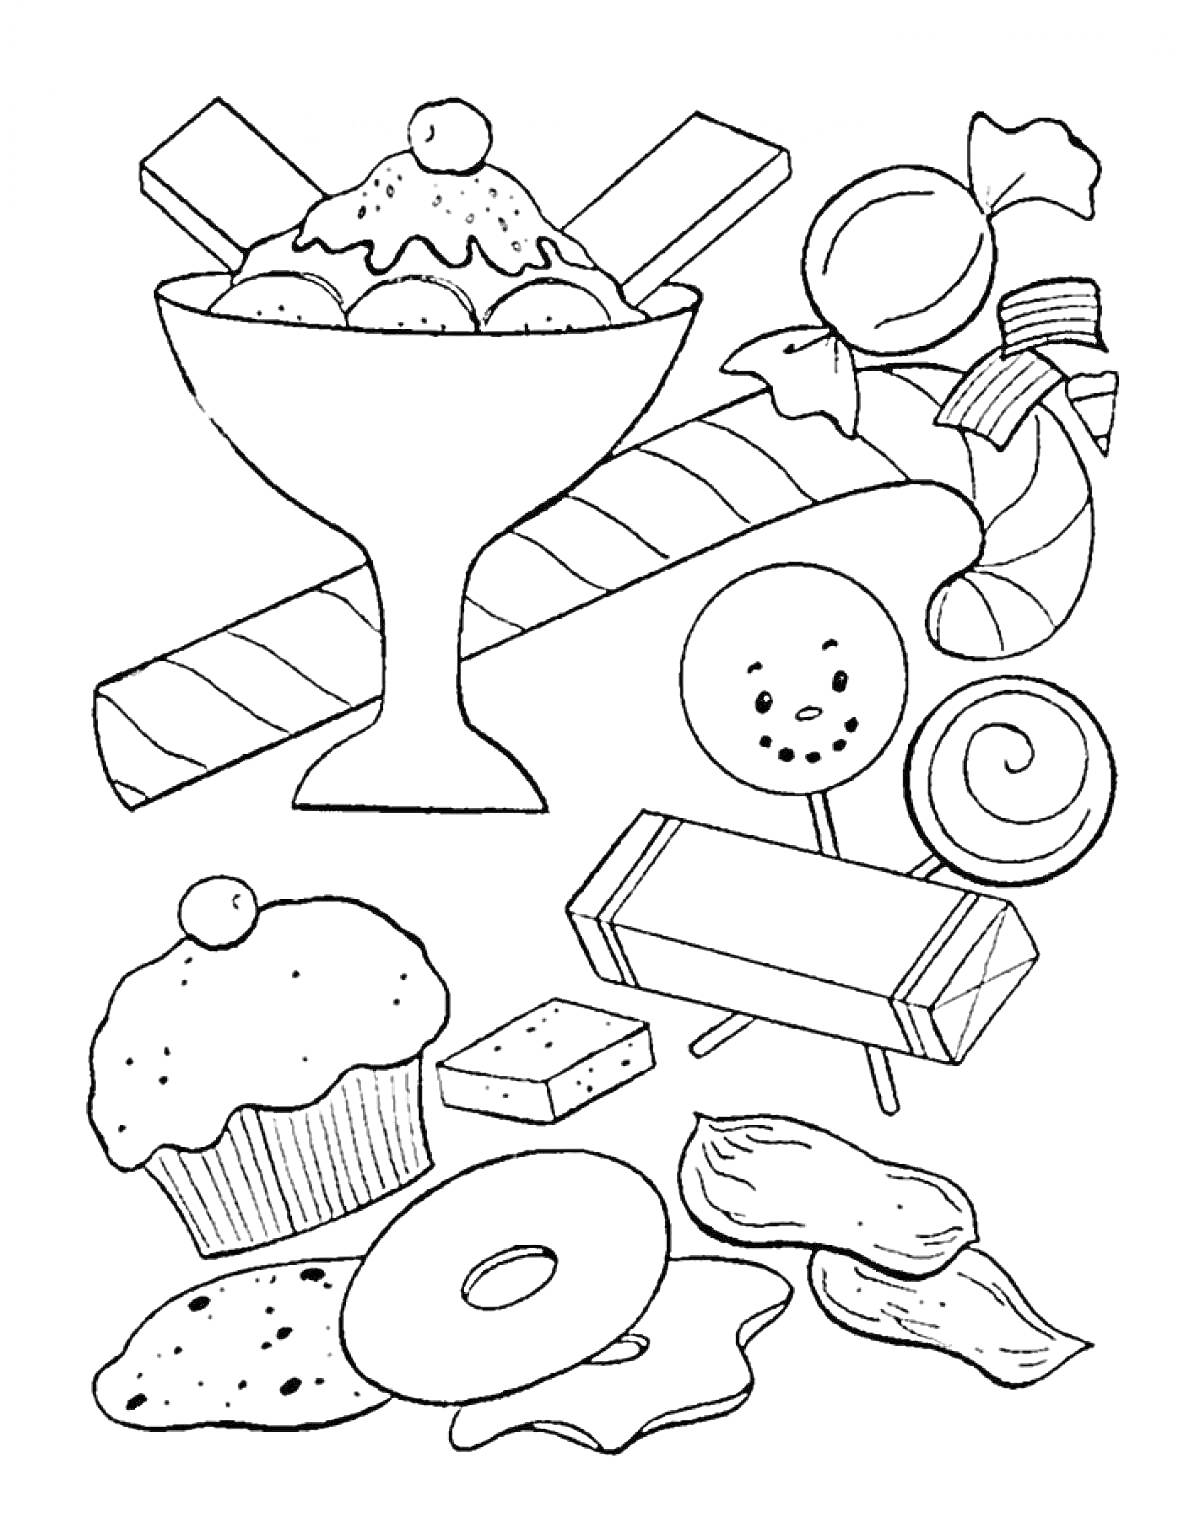 Раскраска мороженое в стакане, карамельные трости, конфеты, кекс, печенье, леденцы, плитка шоколада, пончик